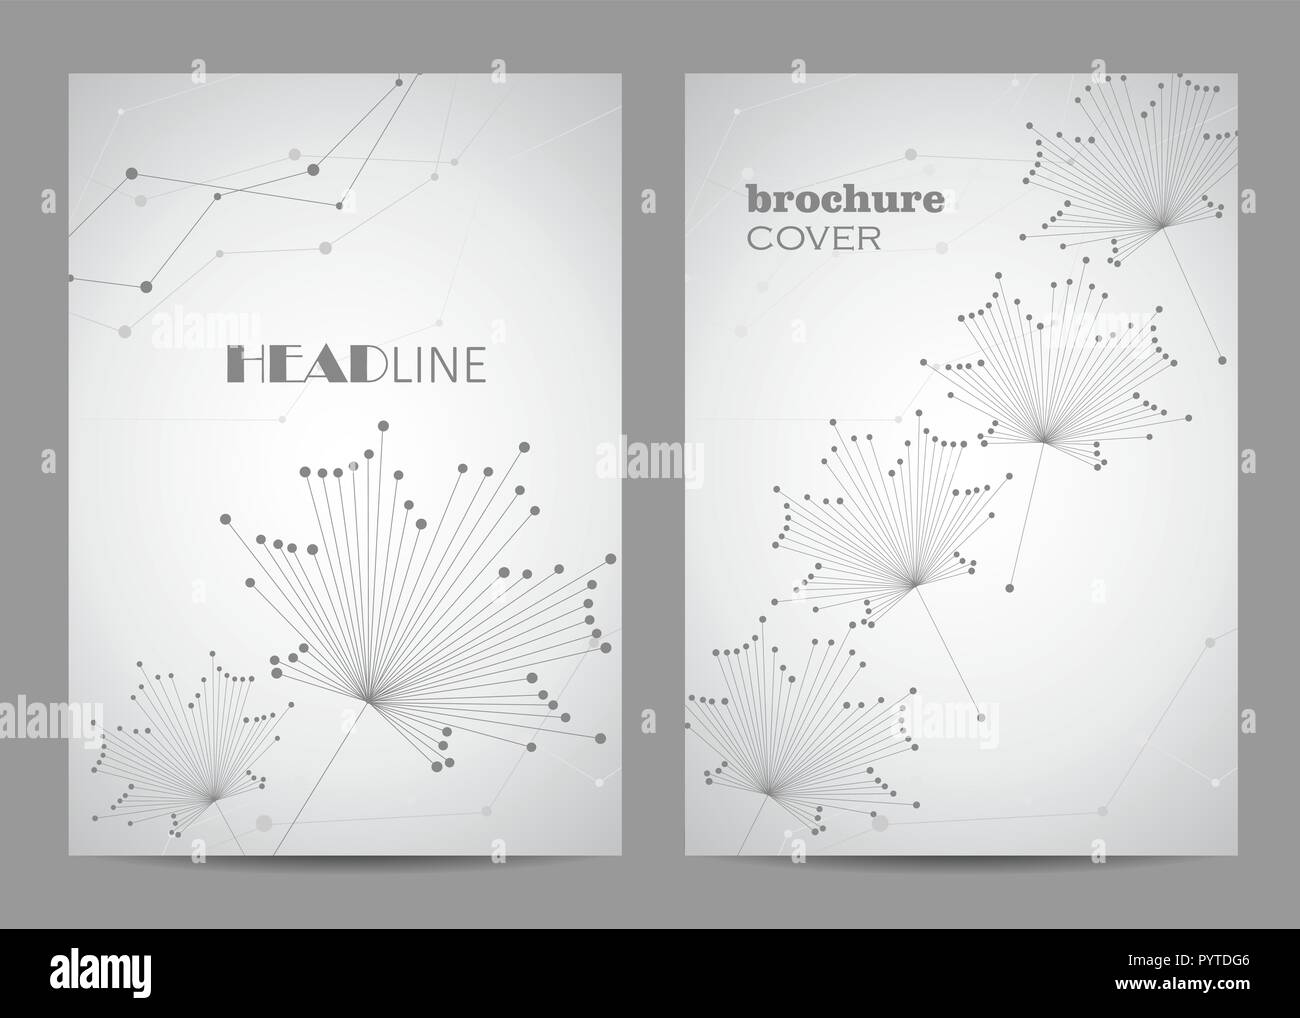 Broschüre Vorlage Layout Design. Abstrakte geometrische Hintergrund mit verbundenen Linien und Punkte Stock Vektor